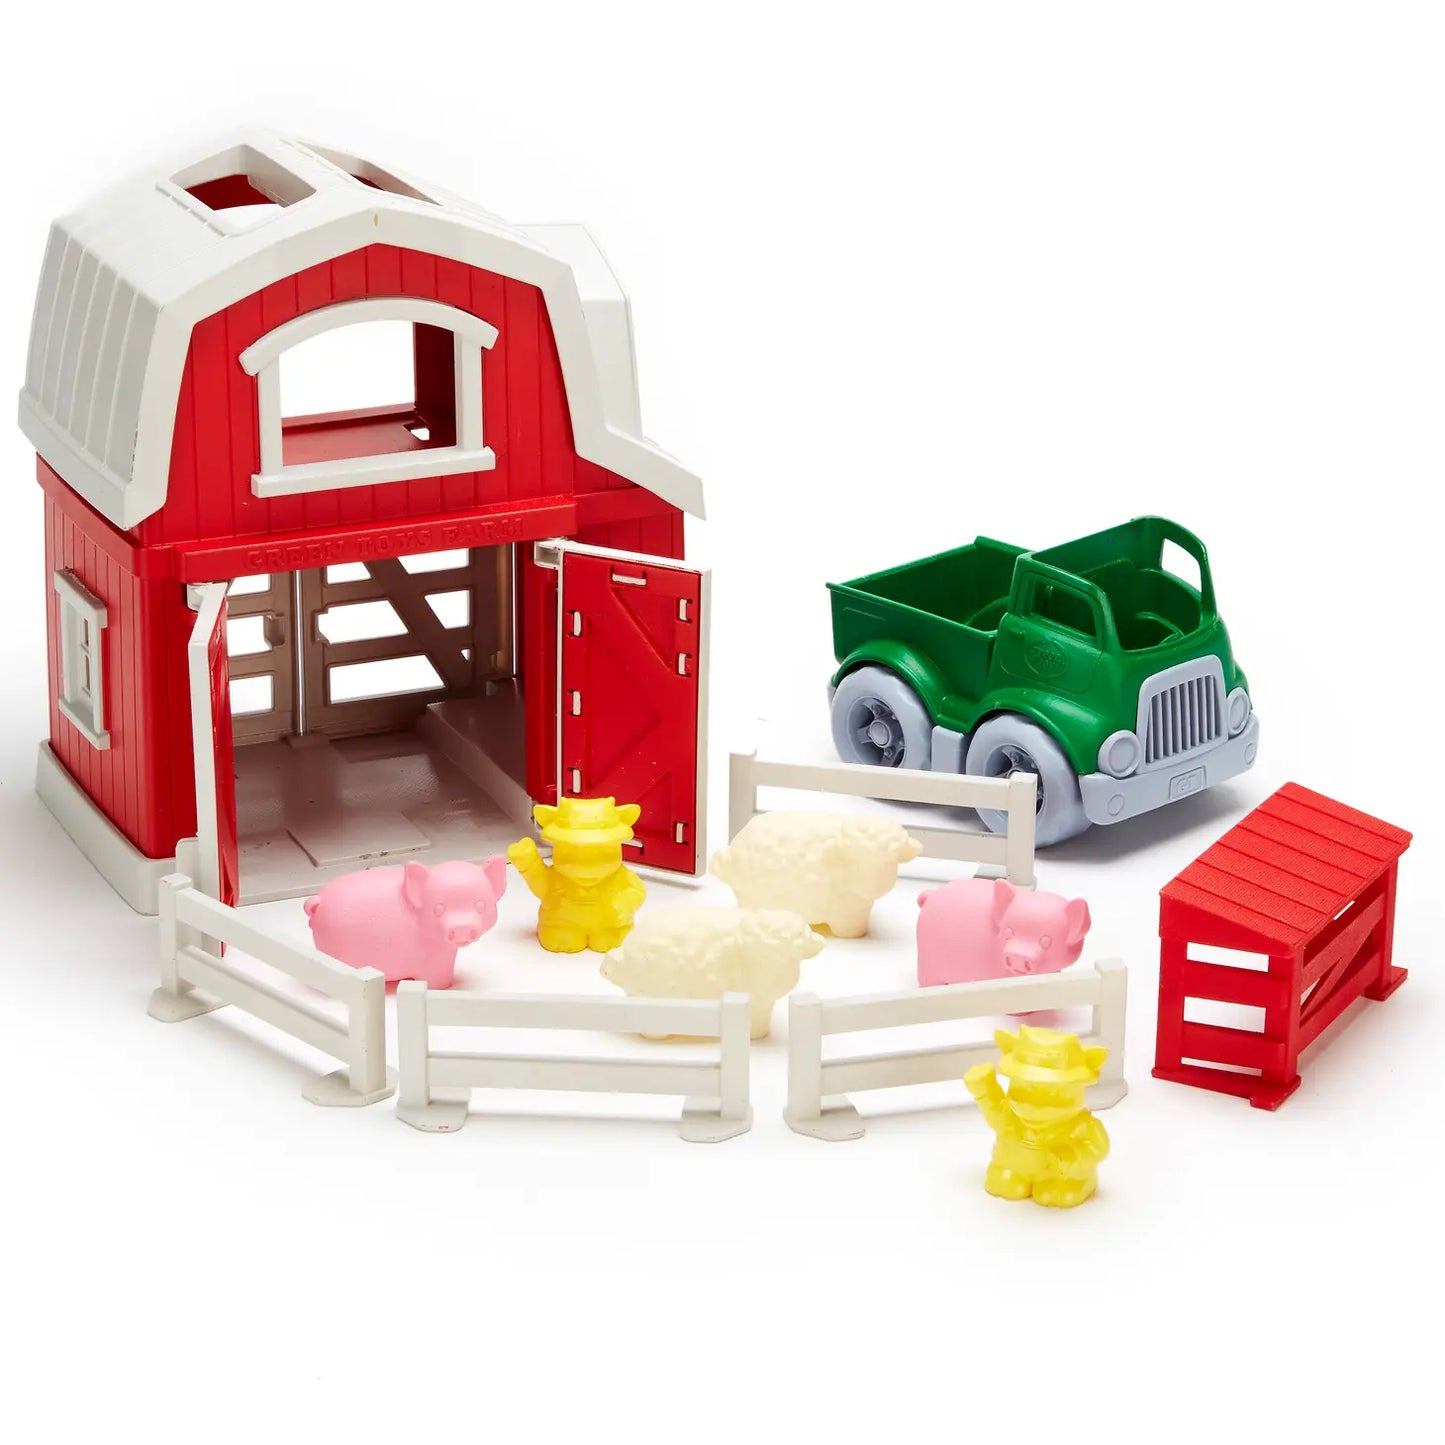 Green toys - Farm Playset